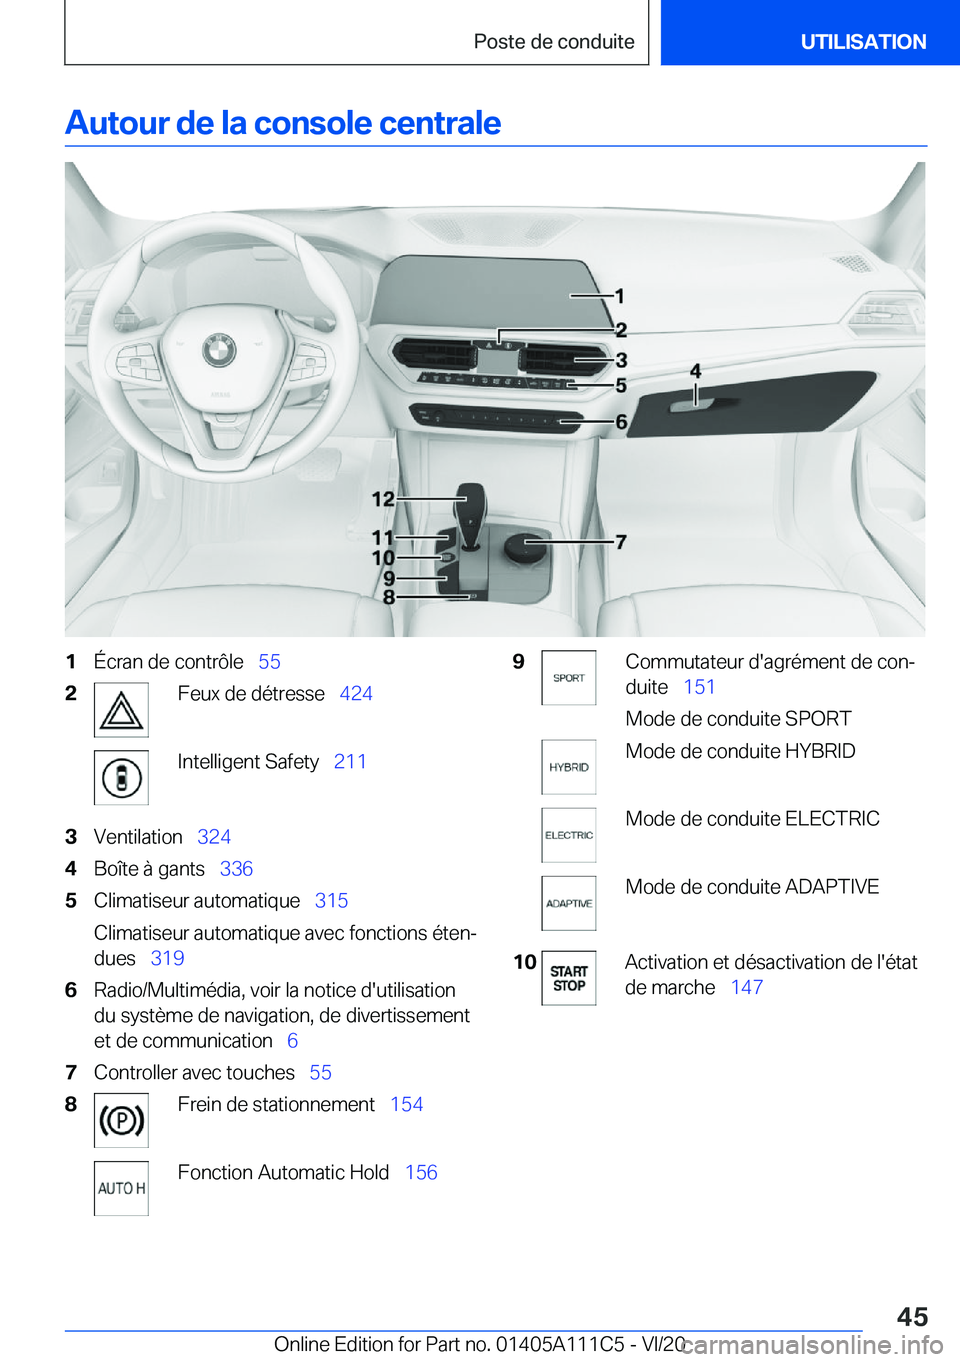 BMW 3 SERIES SEDAN PLUG-IN HYBRID 2021  Notices Demploi (in French) �A�u�t�o�u�r��d�e��l�a��c�o�n�s�o�l�e��c�e�n�t�r�a�l�e�1�